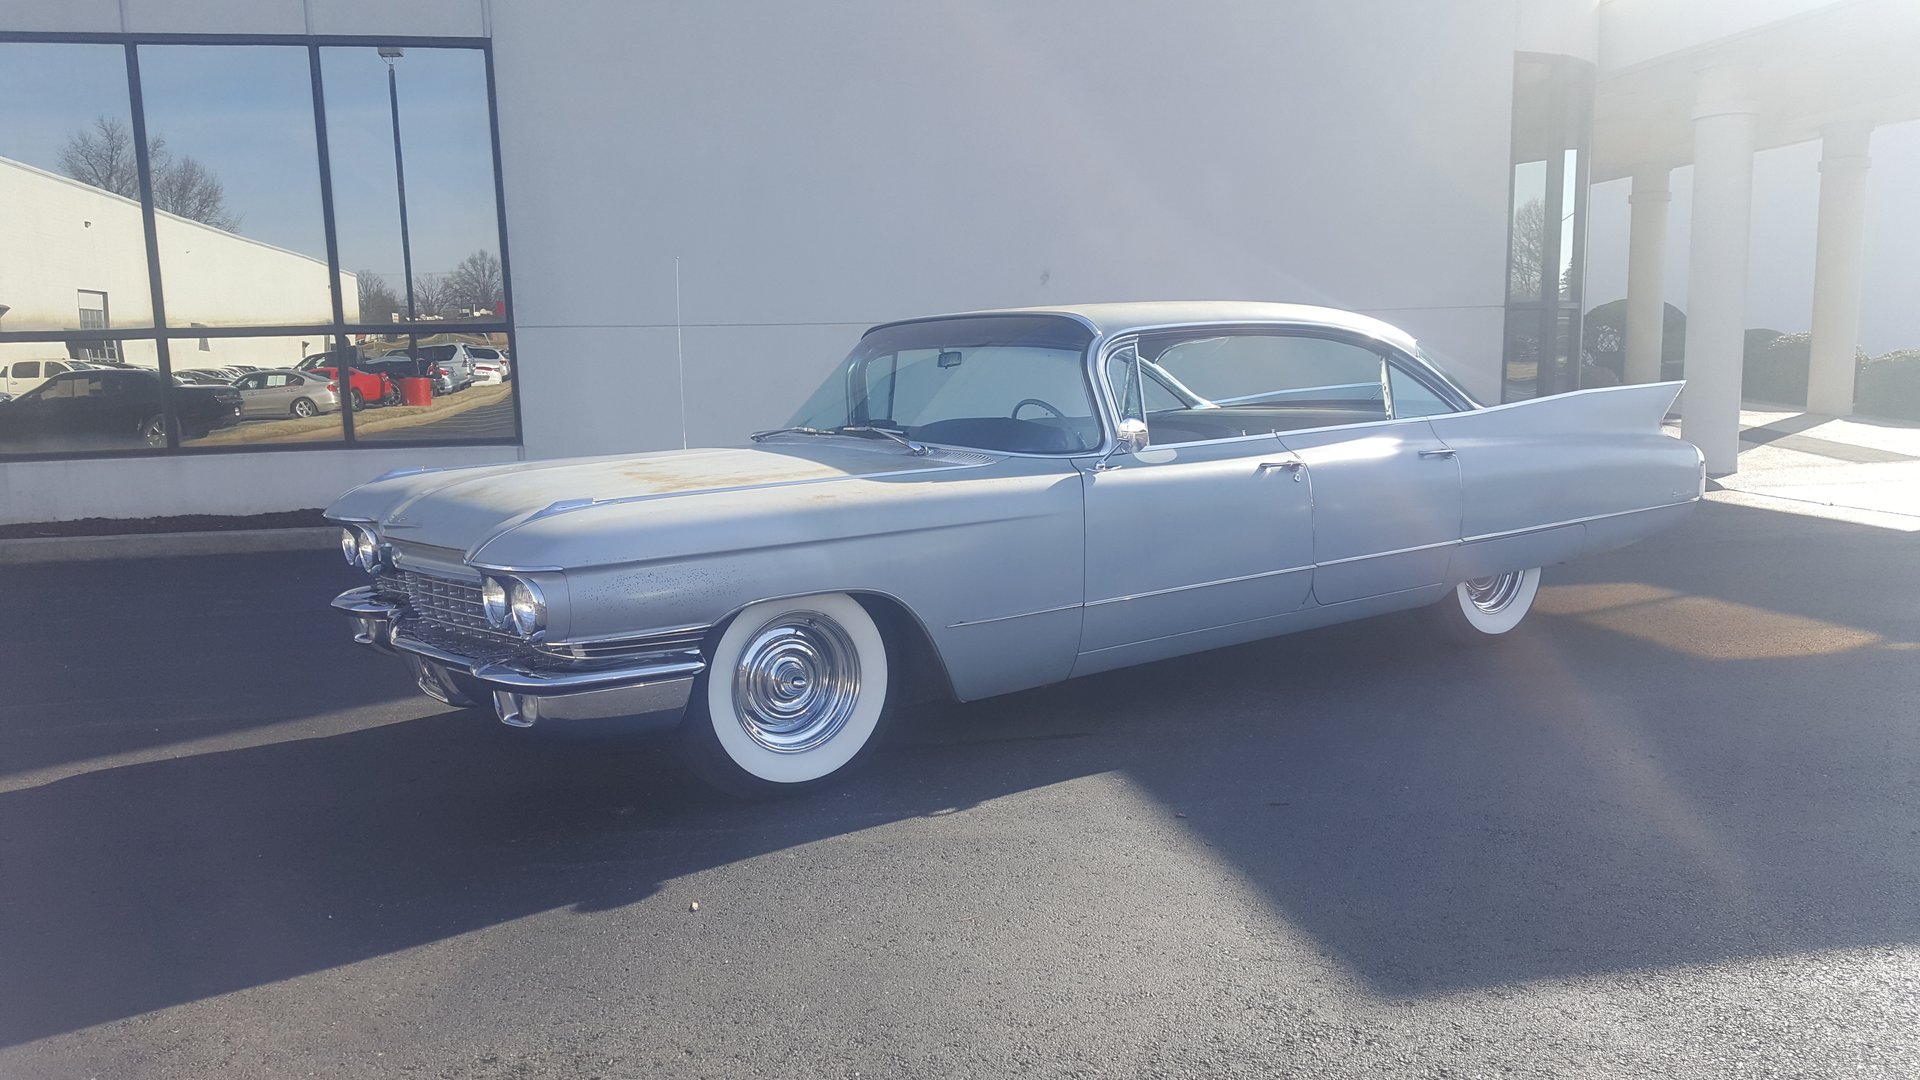 1960 Cadillac 4 Door Hardtop | GAA Classic Cars